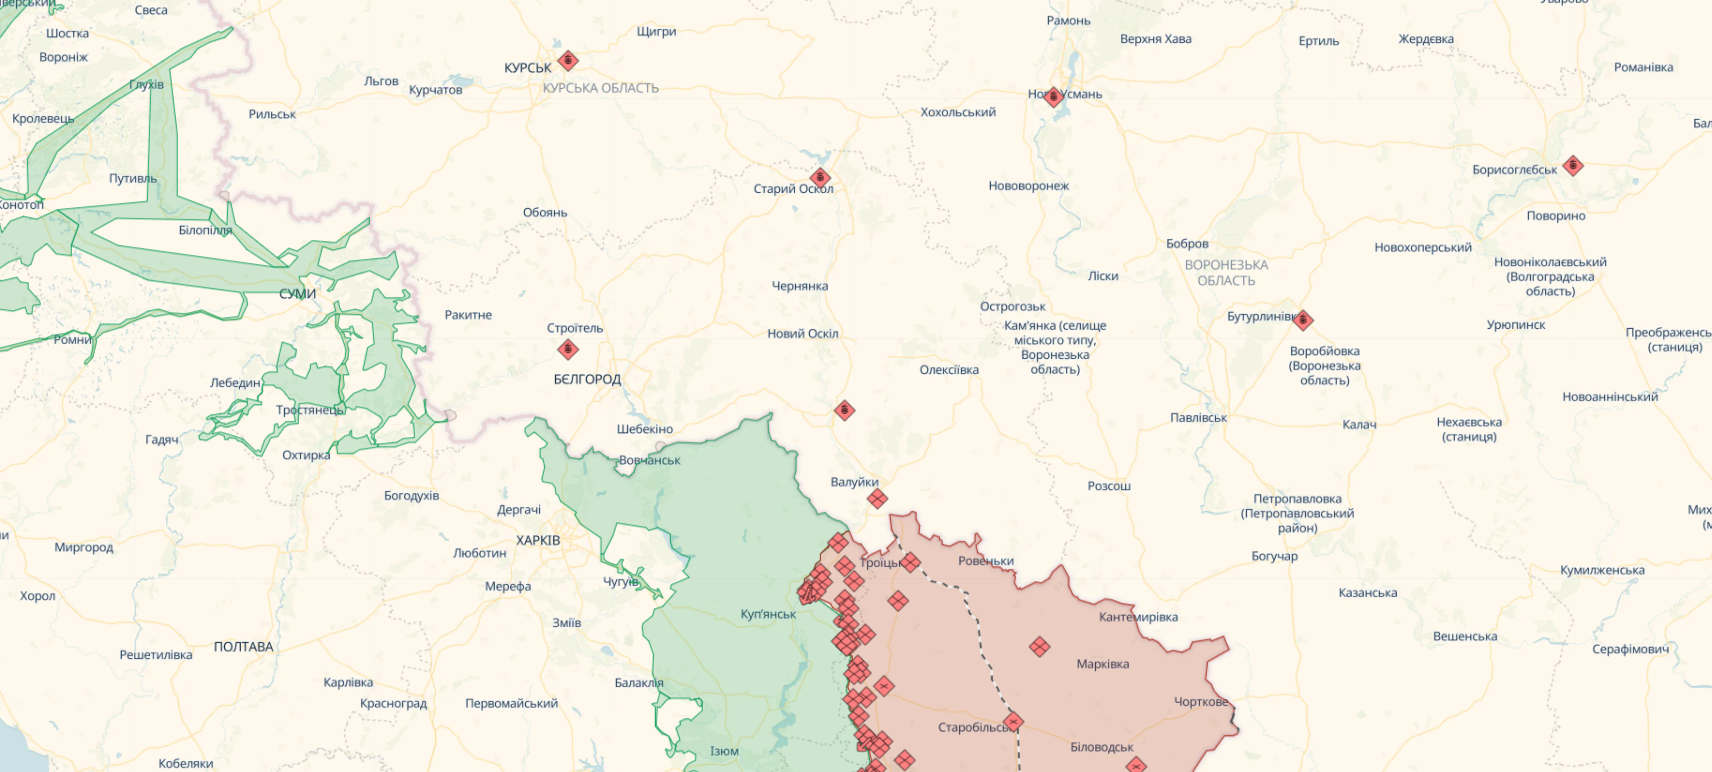 Raid on Belgorod region: Russian proxies tell details of raid on Belgorod region: RDC details